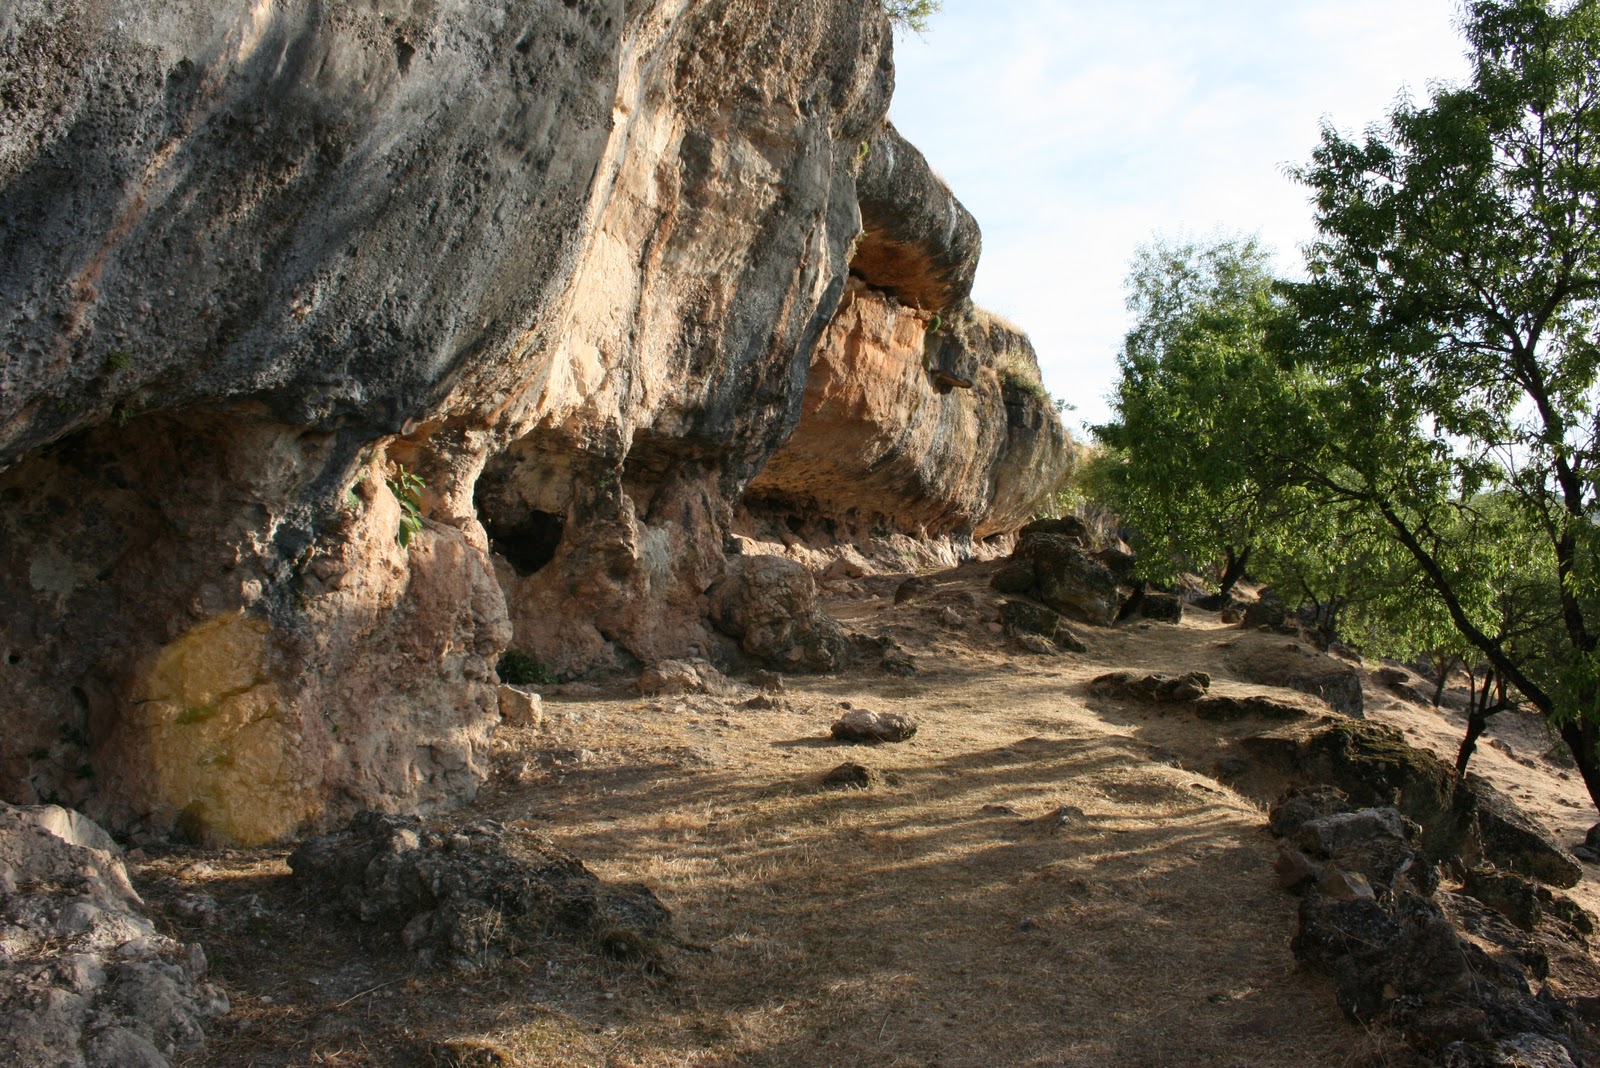 Cueva de la Lobera. Panoramic view